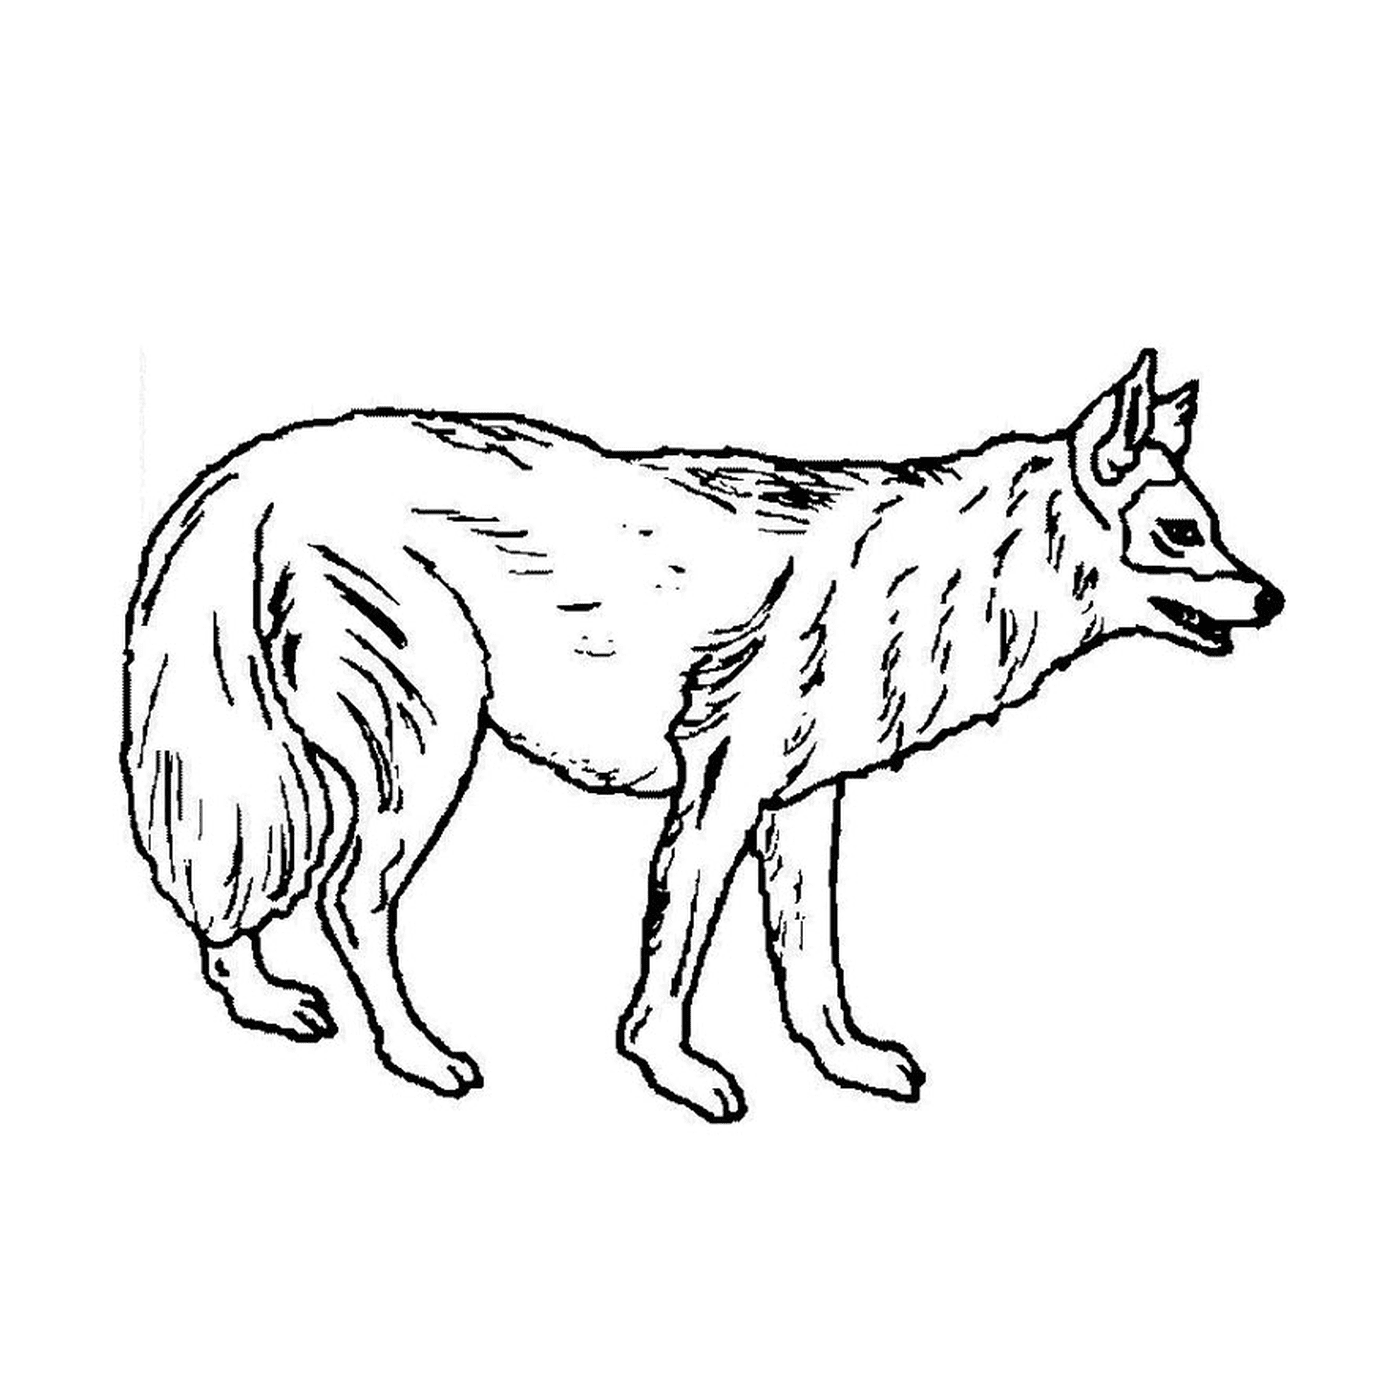  Un cane lupo in piedi sulle sue quattro gambe 